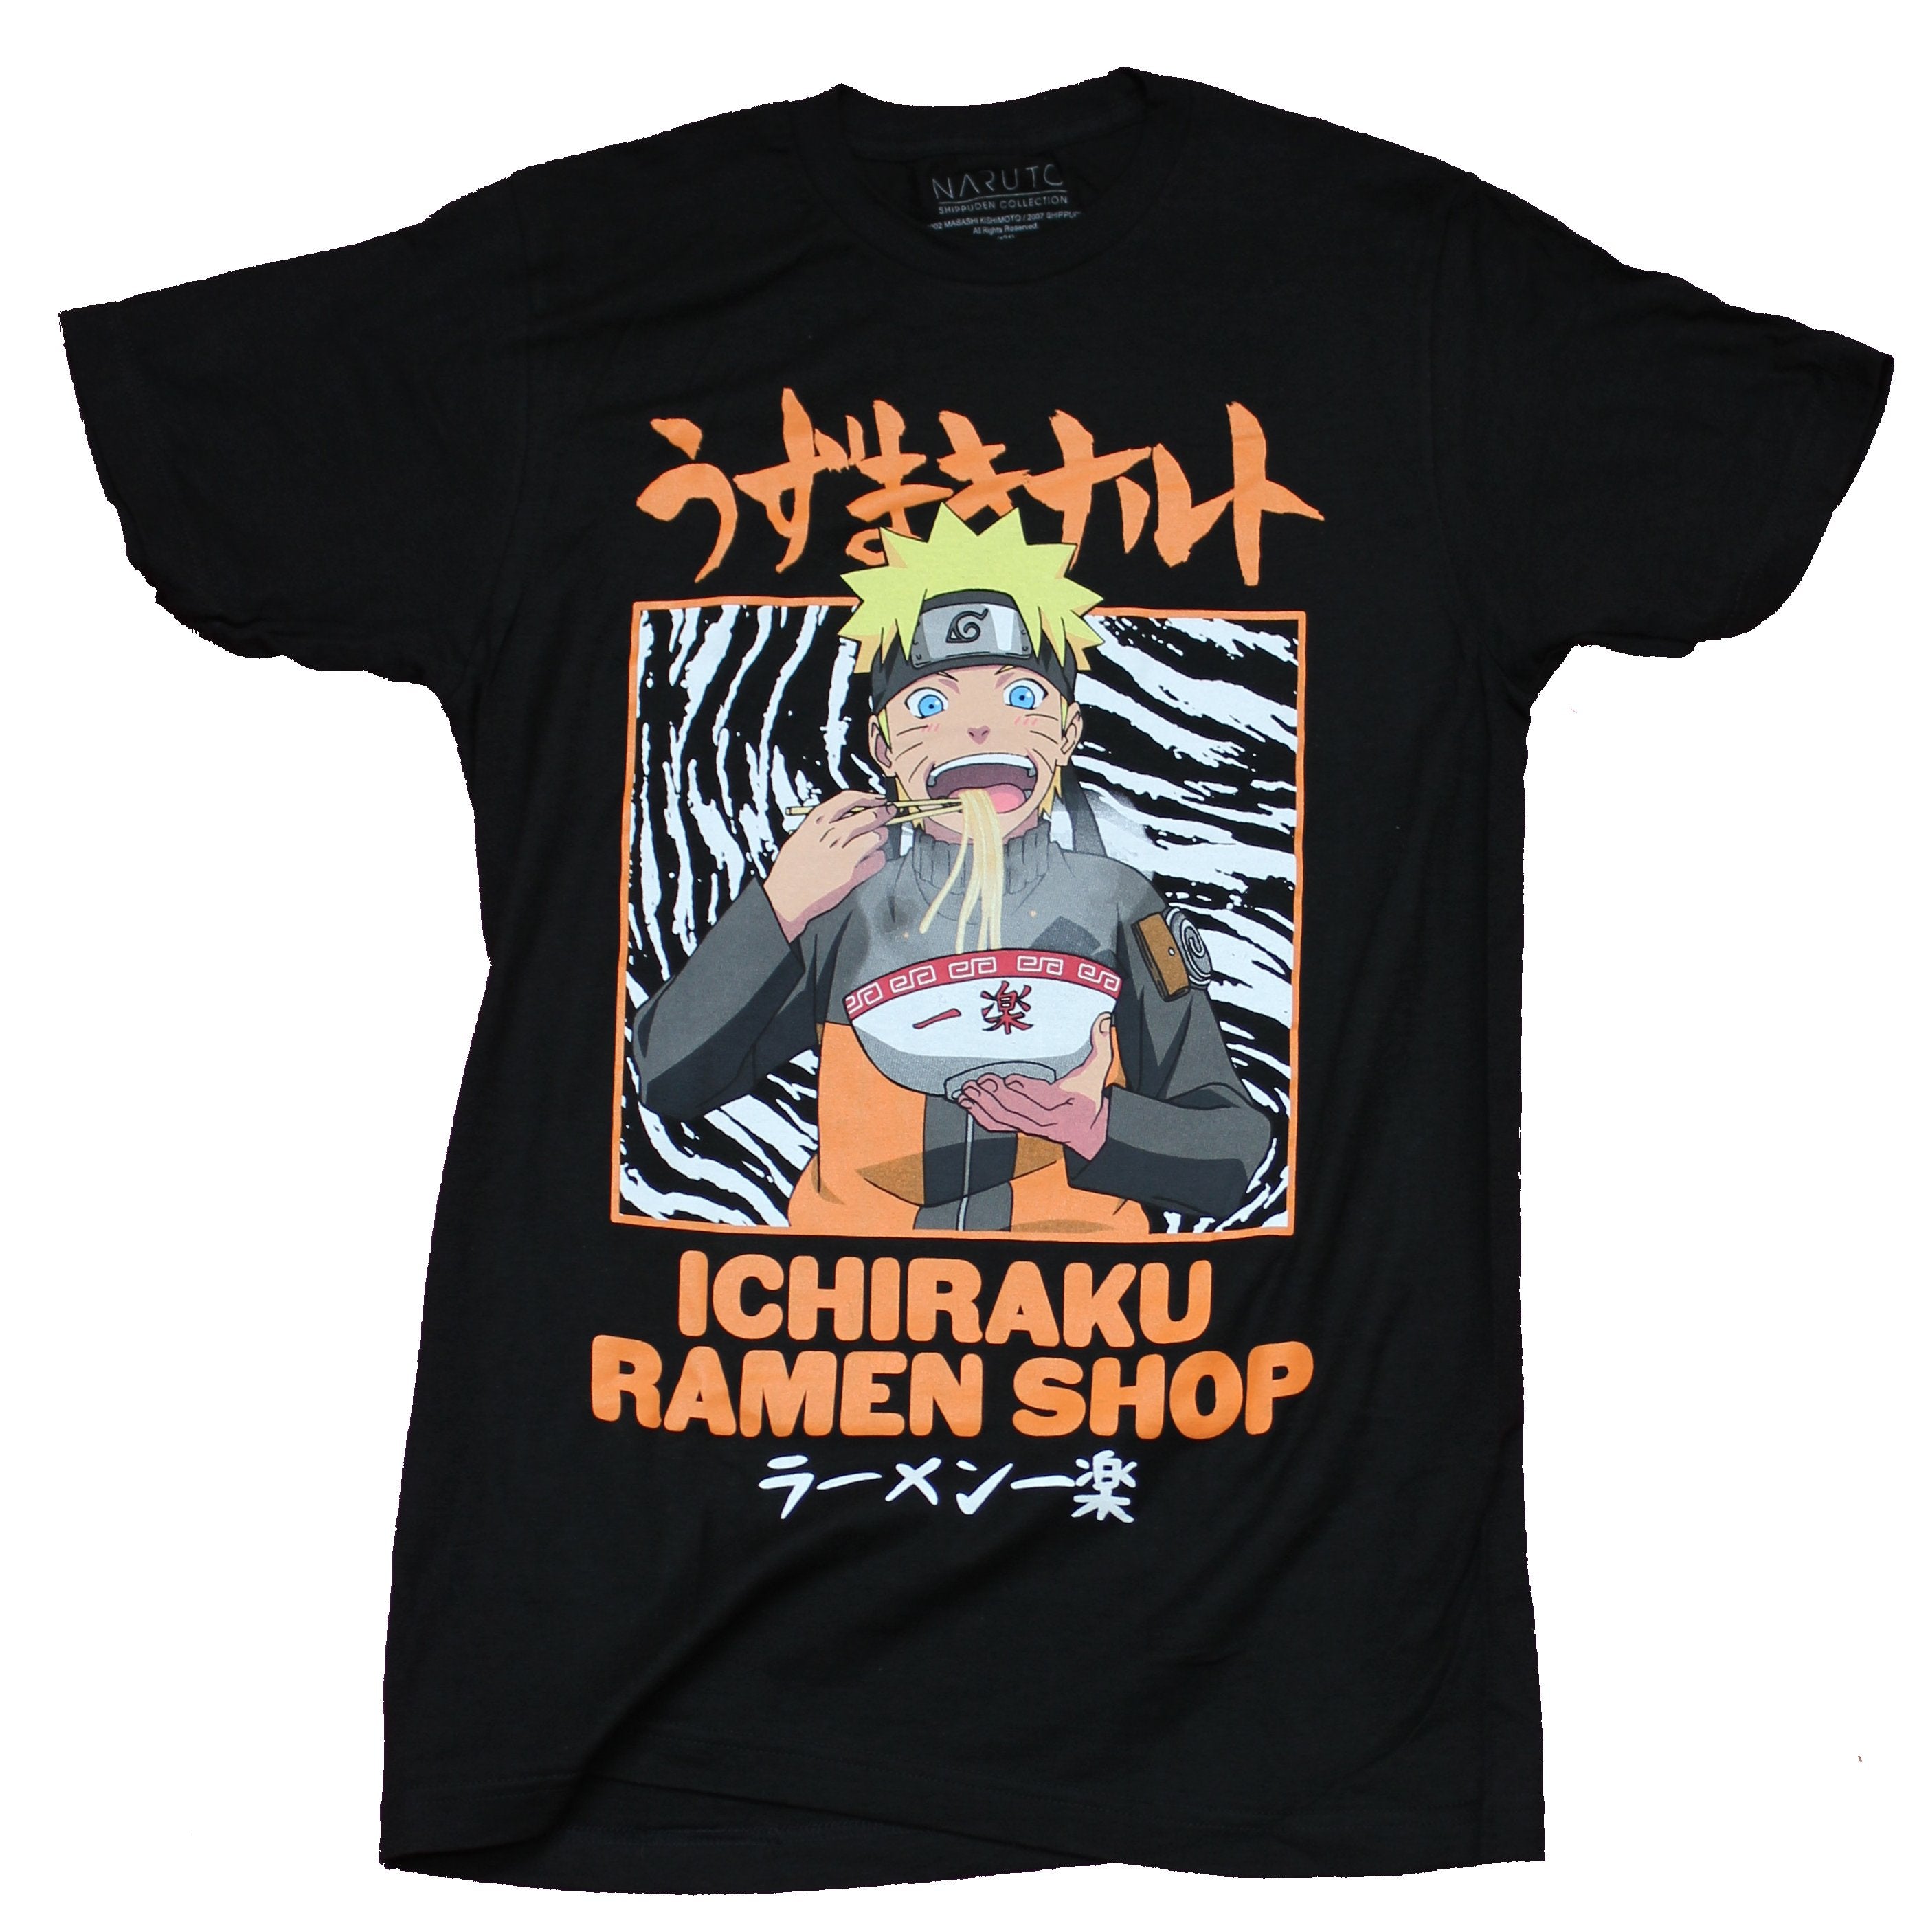 Naruto Shippuden Mens T-Shirt - Giant Ichiraku Ramen Shop Eating Image